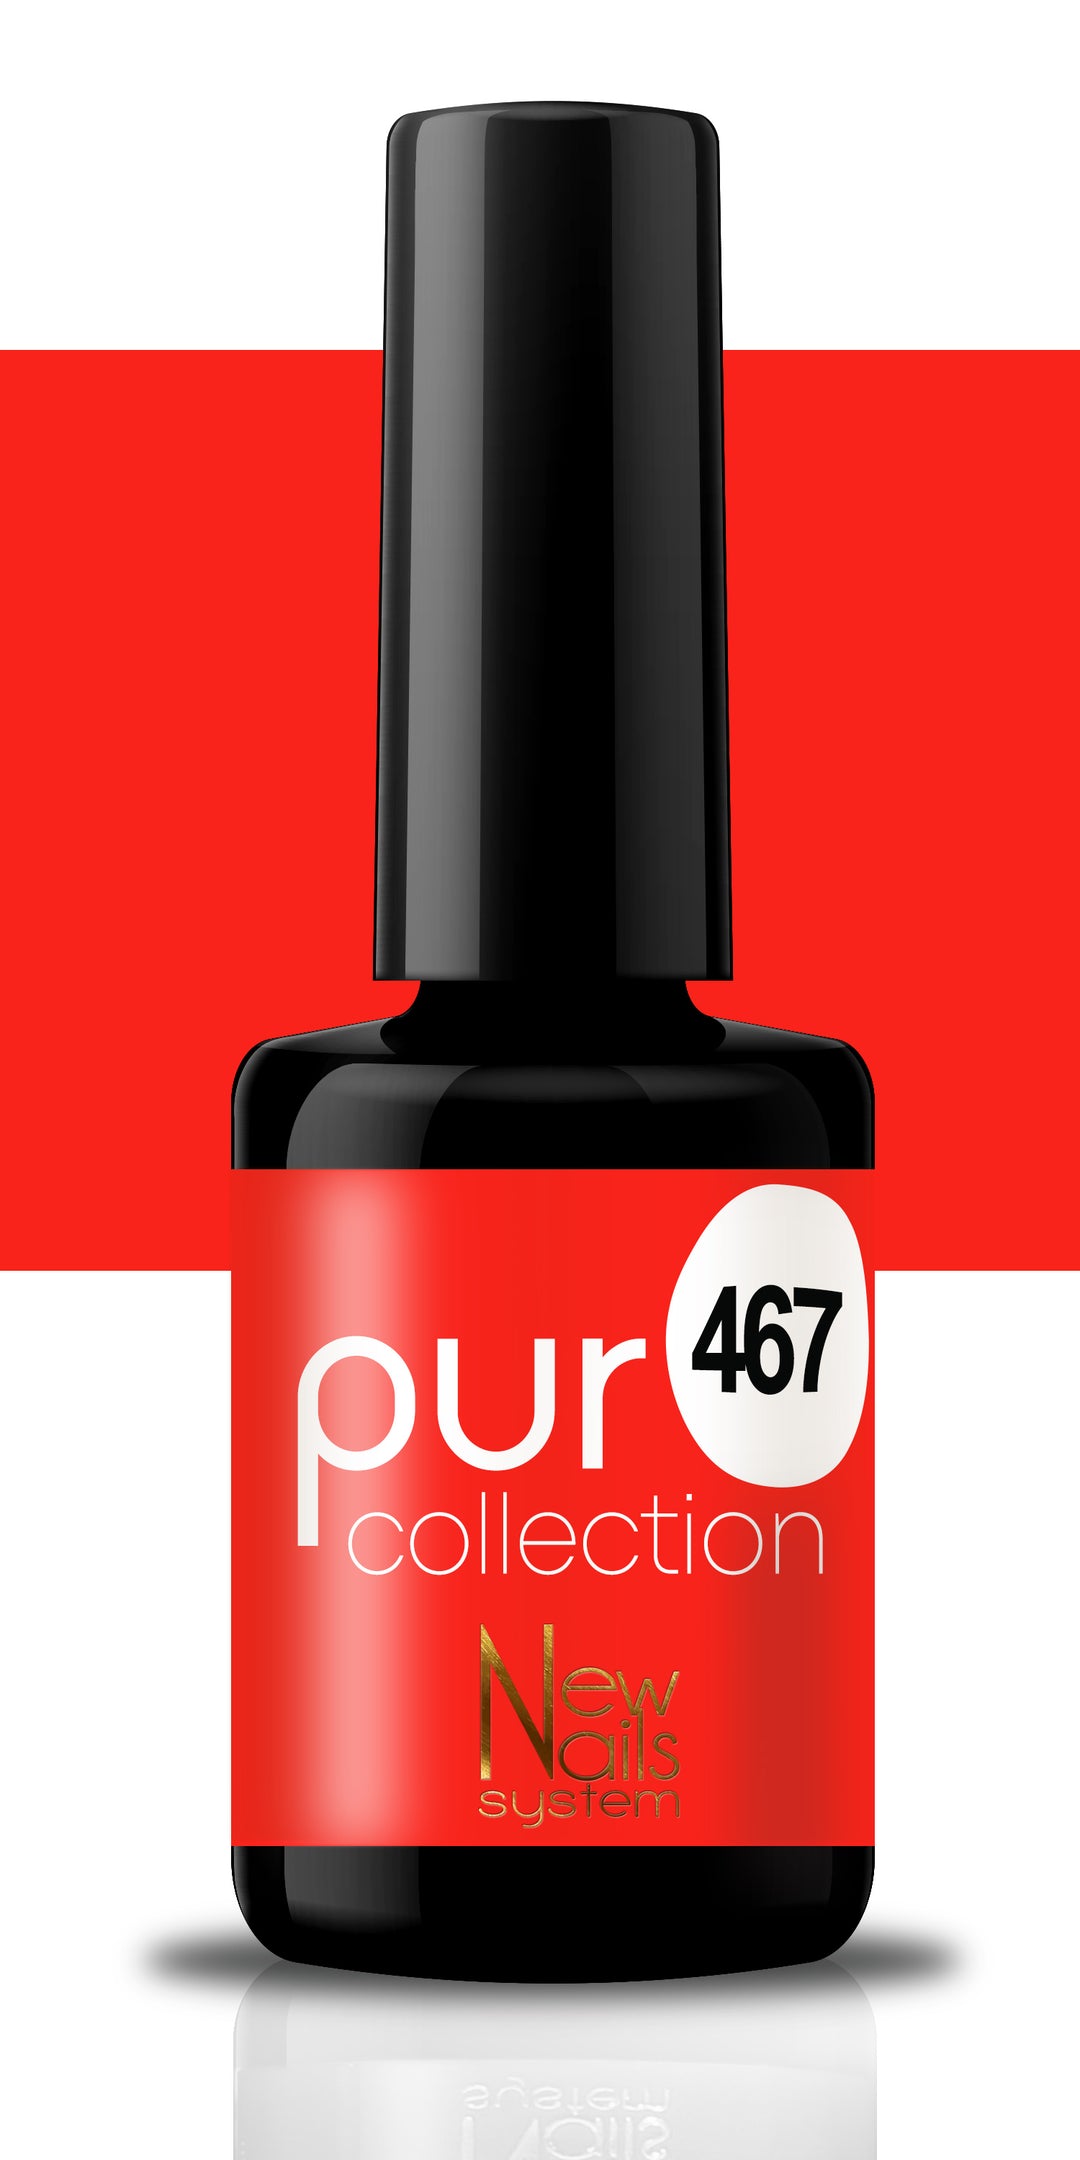 Puro collection 467 colore Rouge Passion semipermanente 5ml